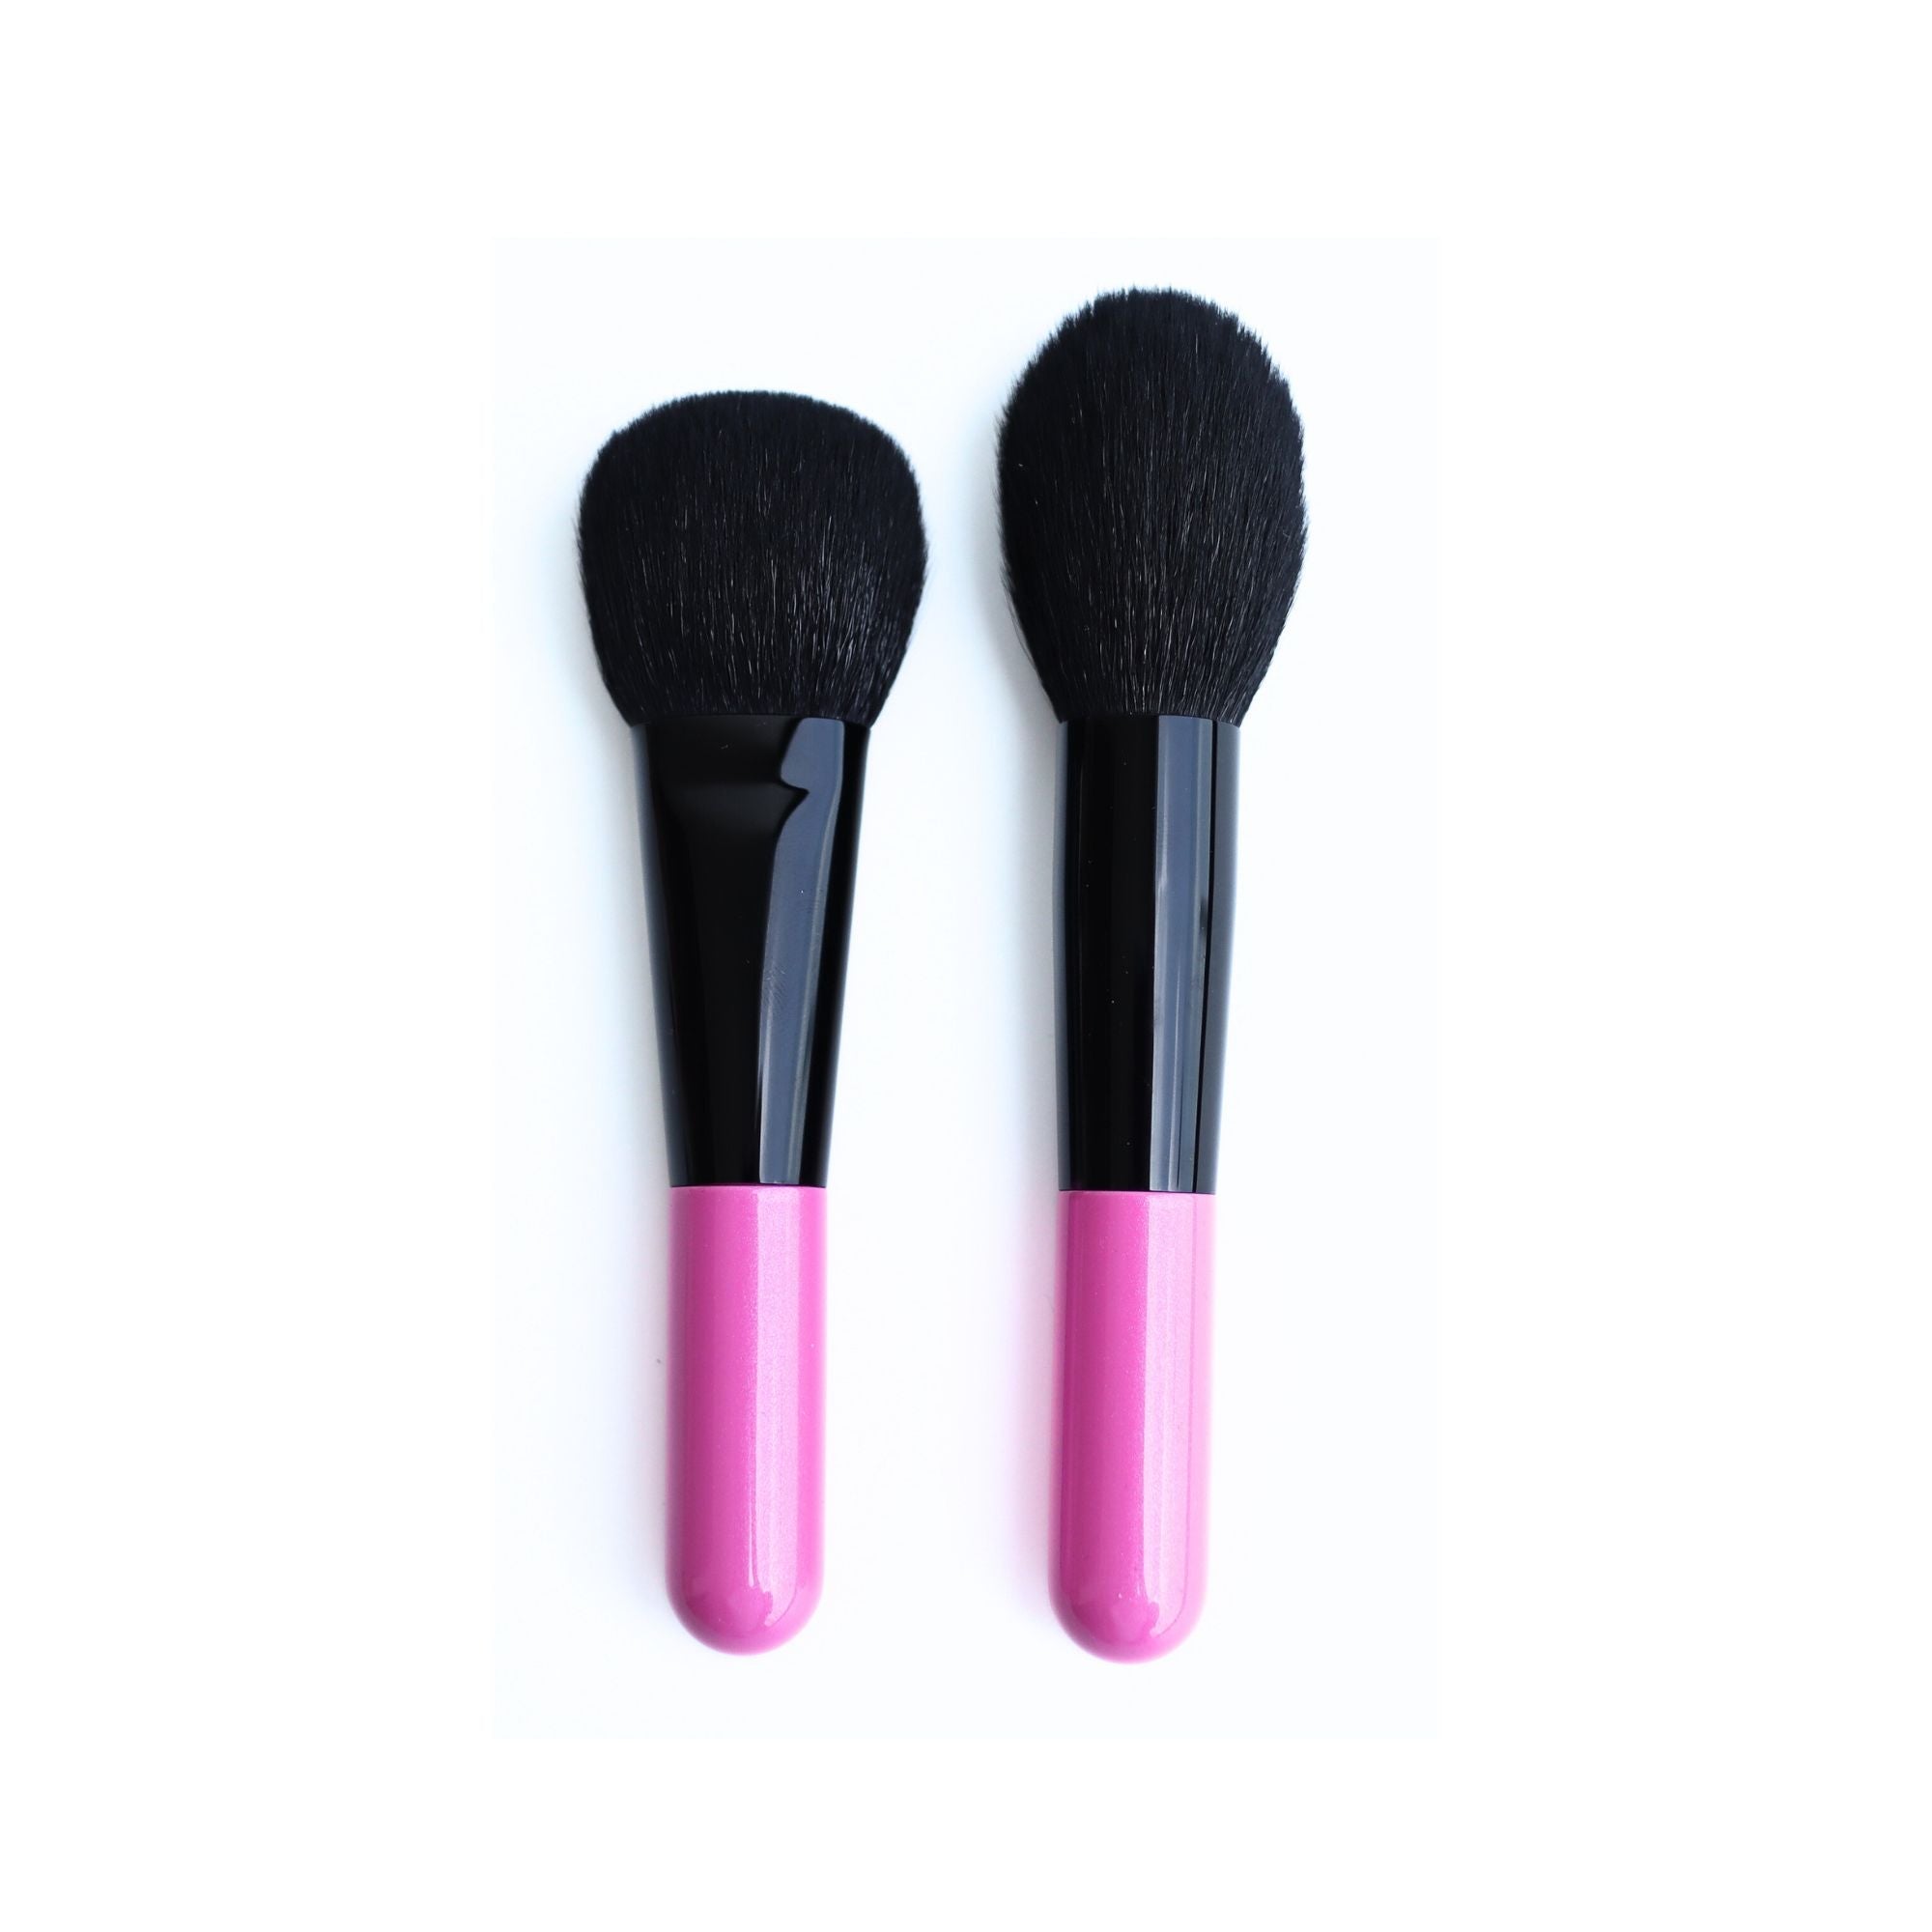 Koyudo Powder/Cheek Brush, Candle Shape (2307-22) - Fude Beauty, Japanese Makeup Brushes